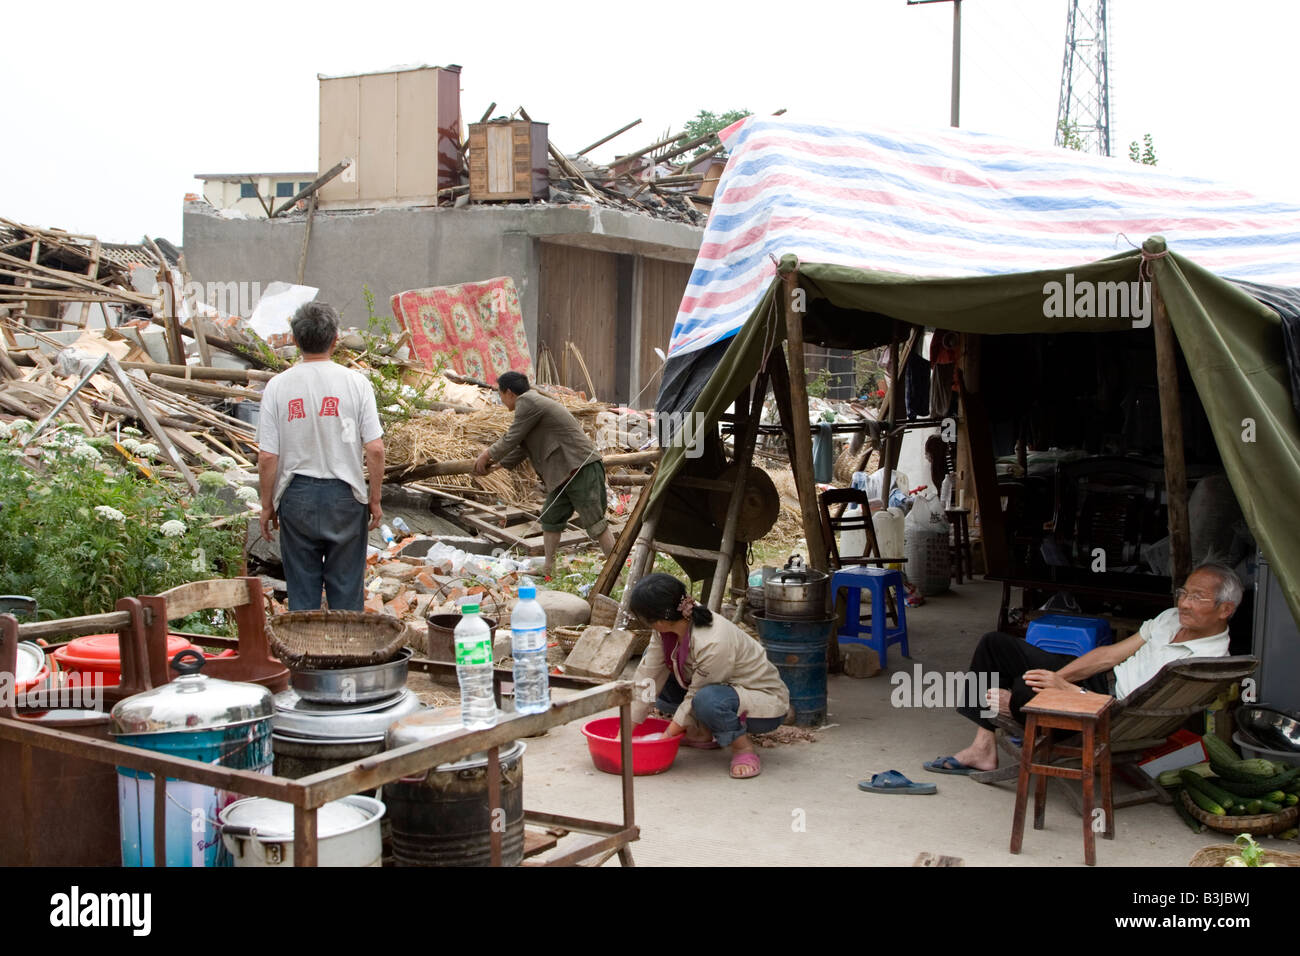 Famiglia nella tenda di fortuna al di fuori della loro casa distrutta dal terremoto del 12 maggio 2008 nel Sichuan, in Cina Foto Stock